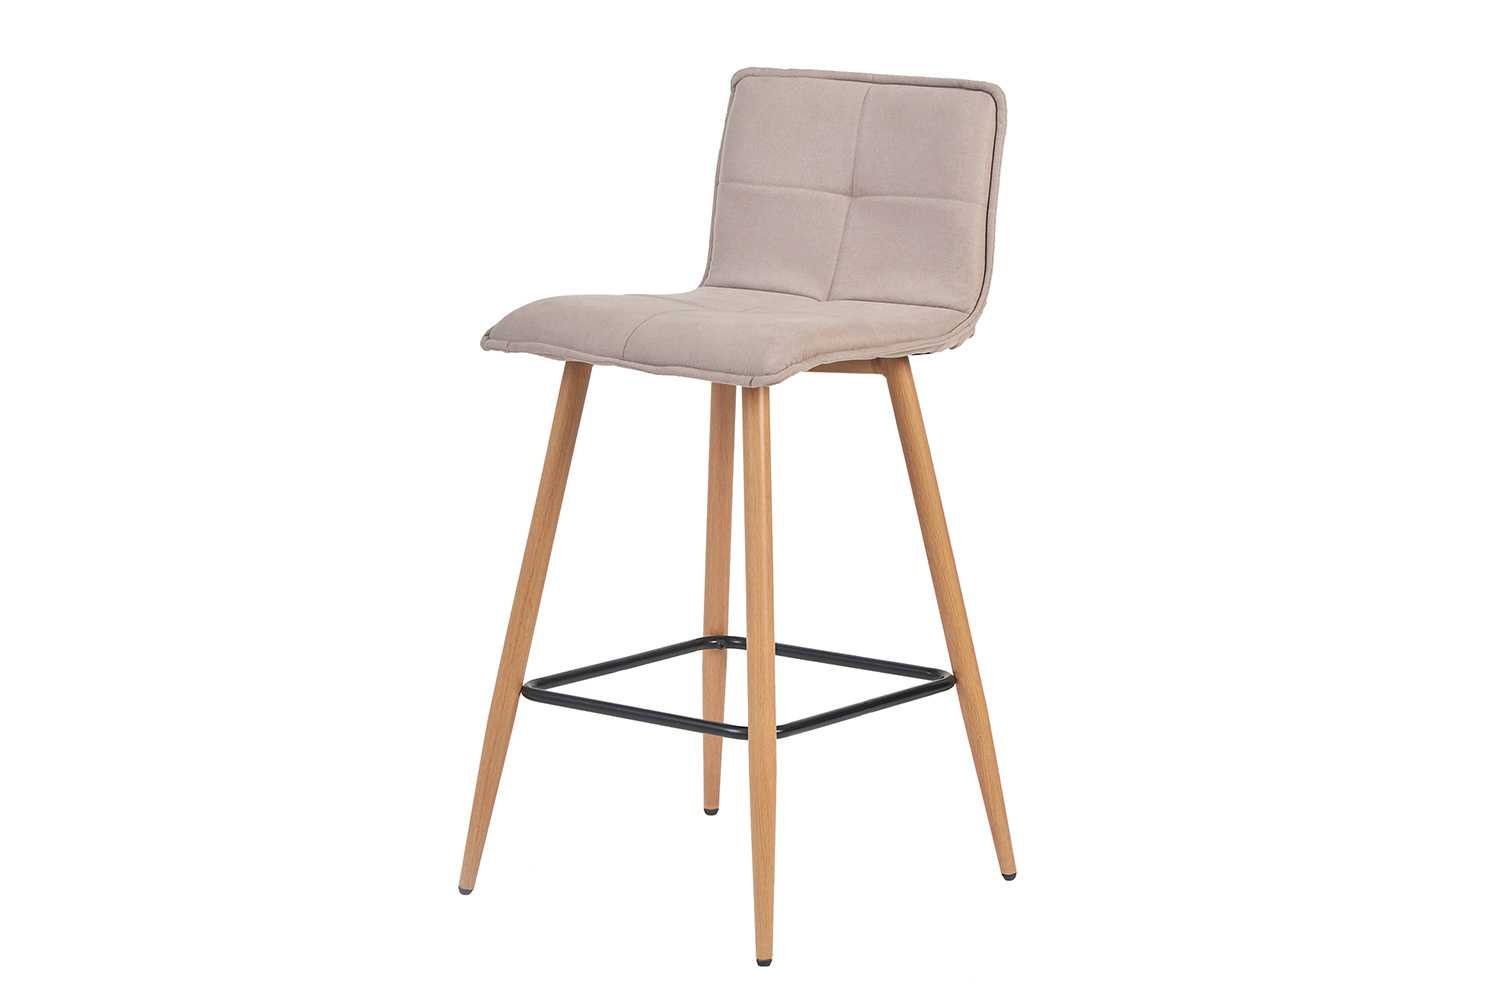 Барные стулья от ikea (50 фото) — складные деревянные полубарные варианты с чехлом, модели «ингольф» и «стиг», отзывы покупателей